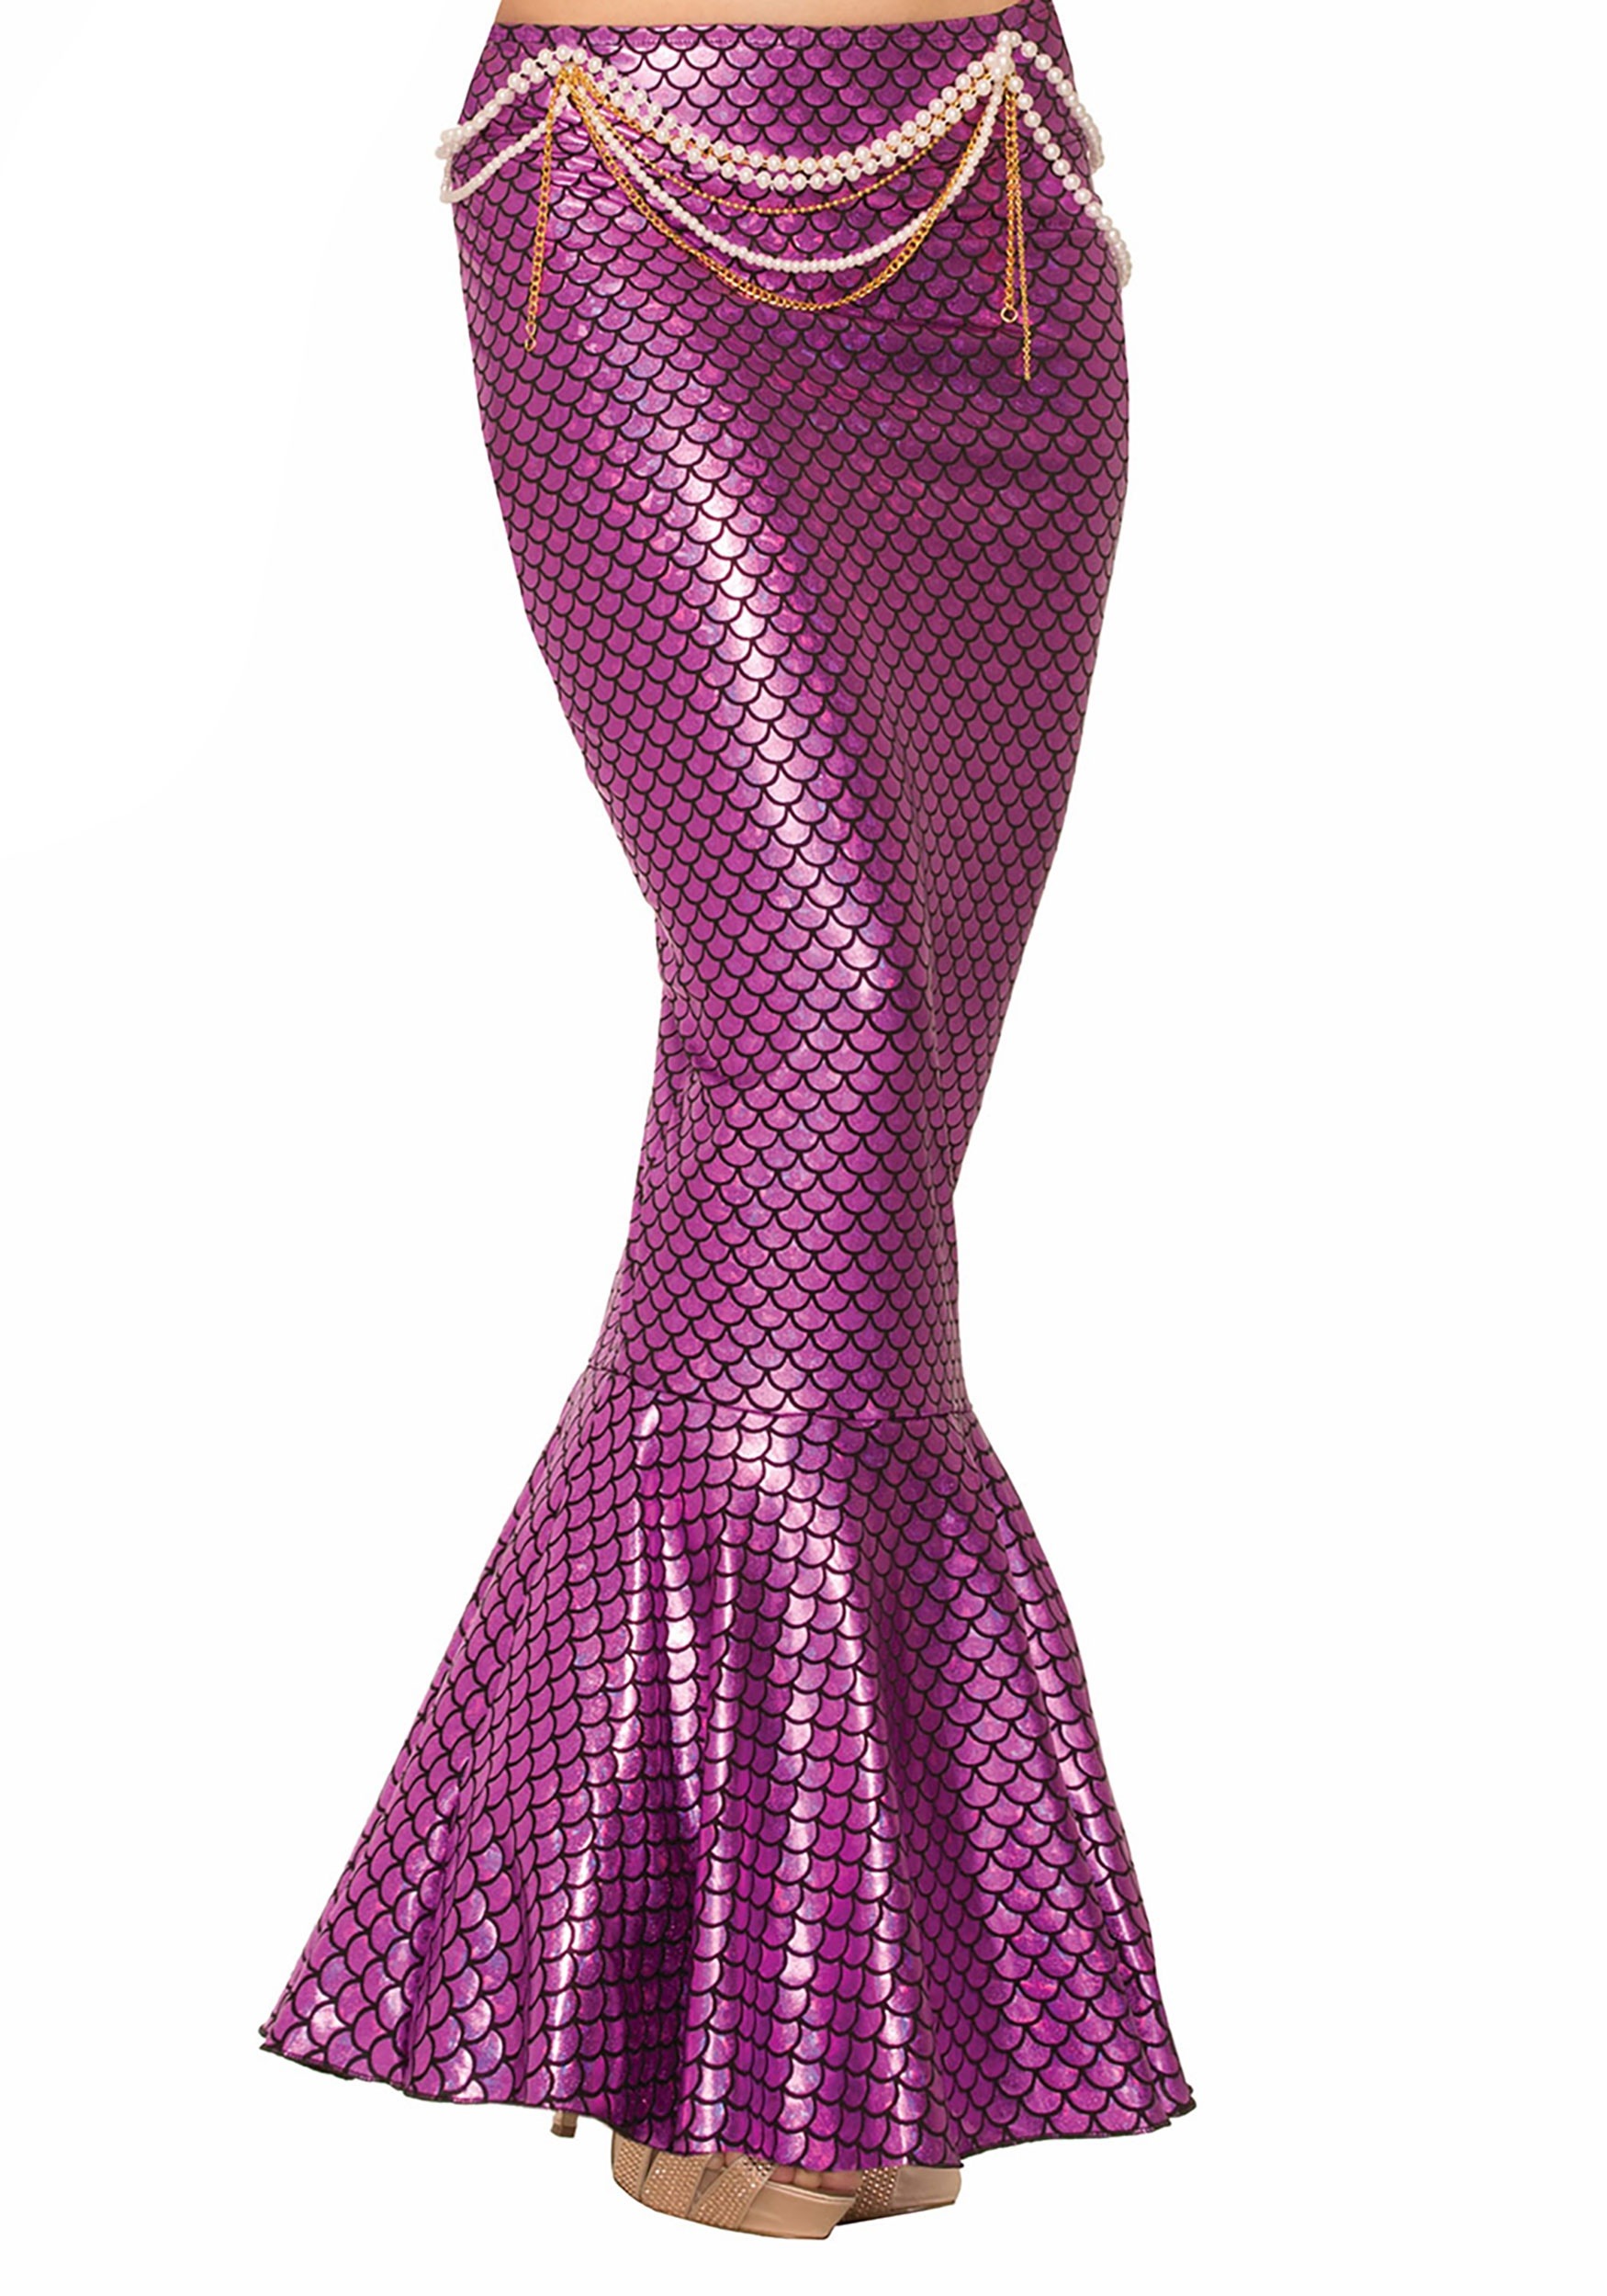 Women's Pink Mermaid Fin Skirt Costume